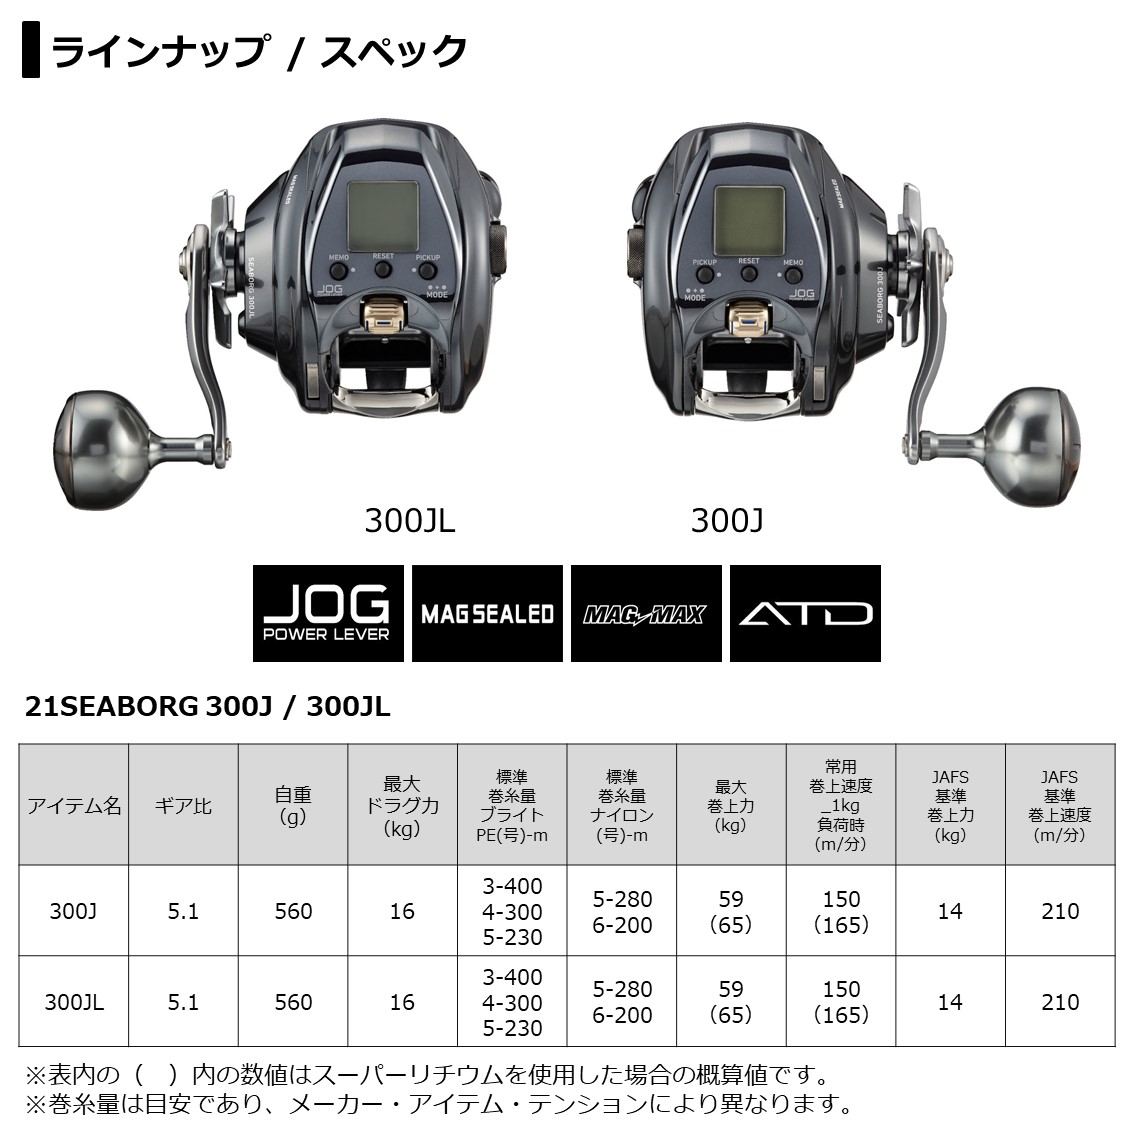 ダイワ シーボーグ 300J 右ハンドル (電動リール) - 釣り具の販売